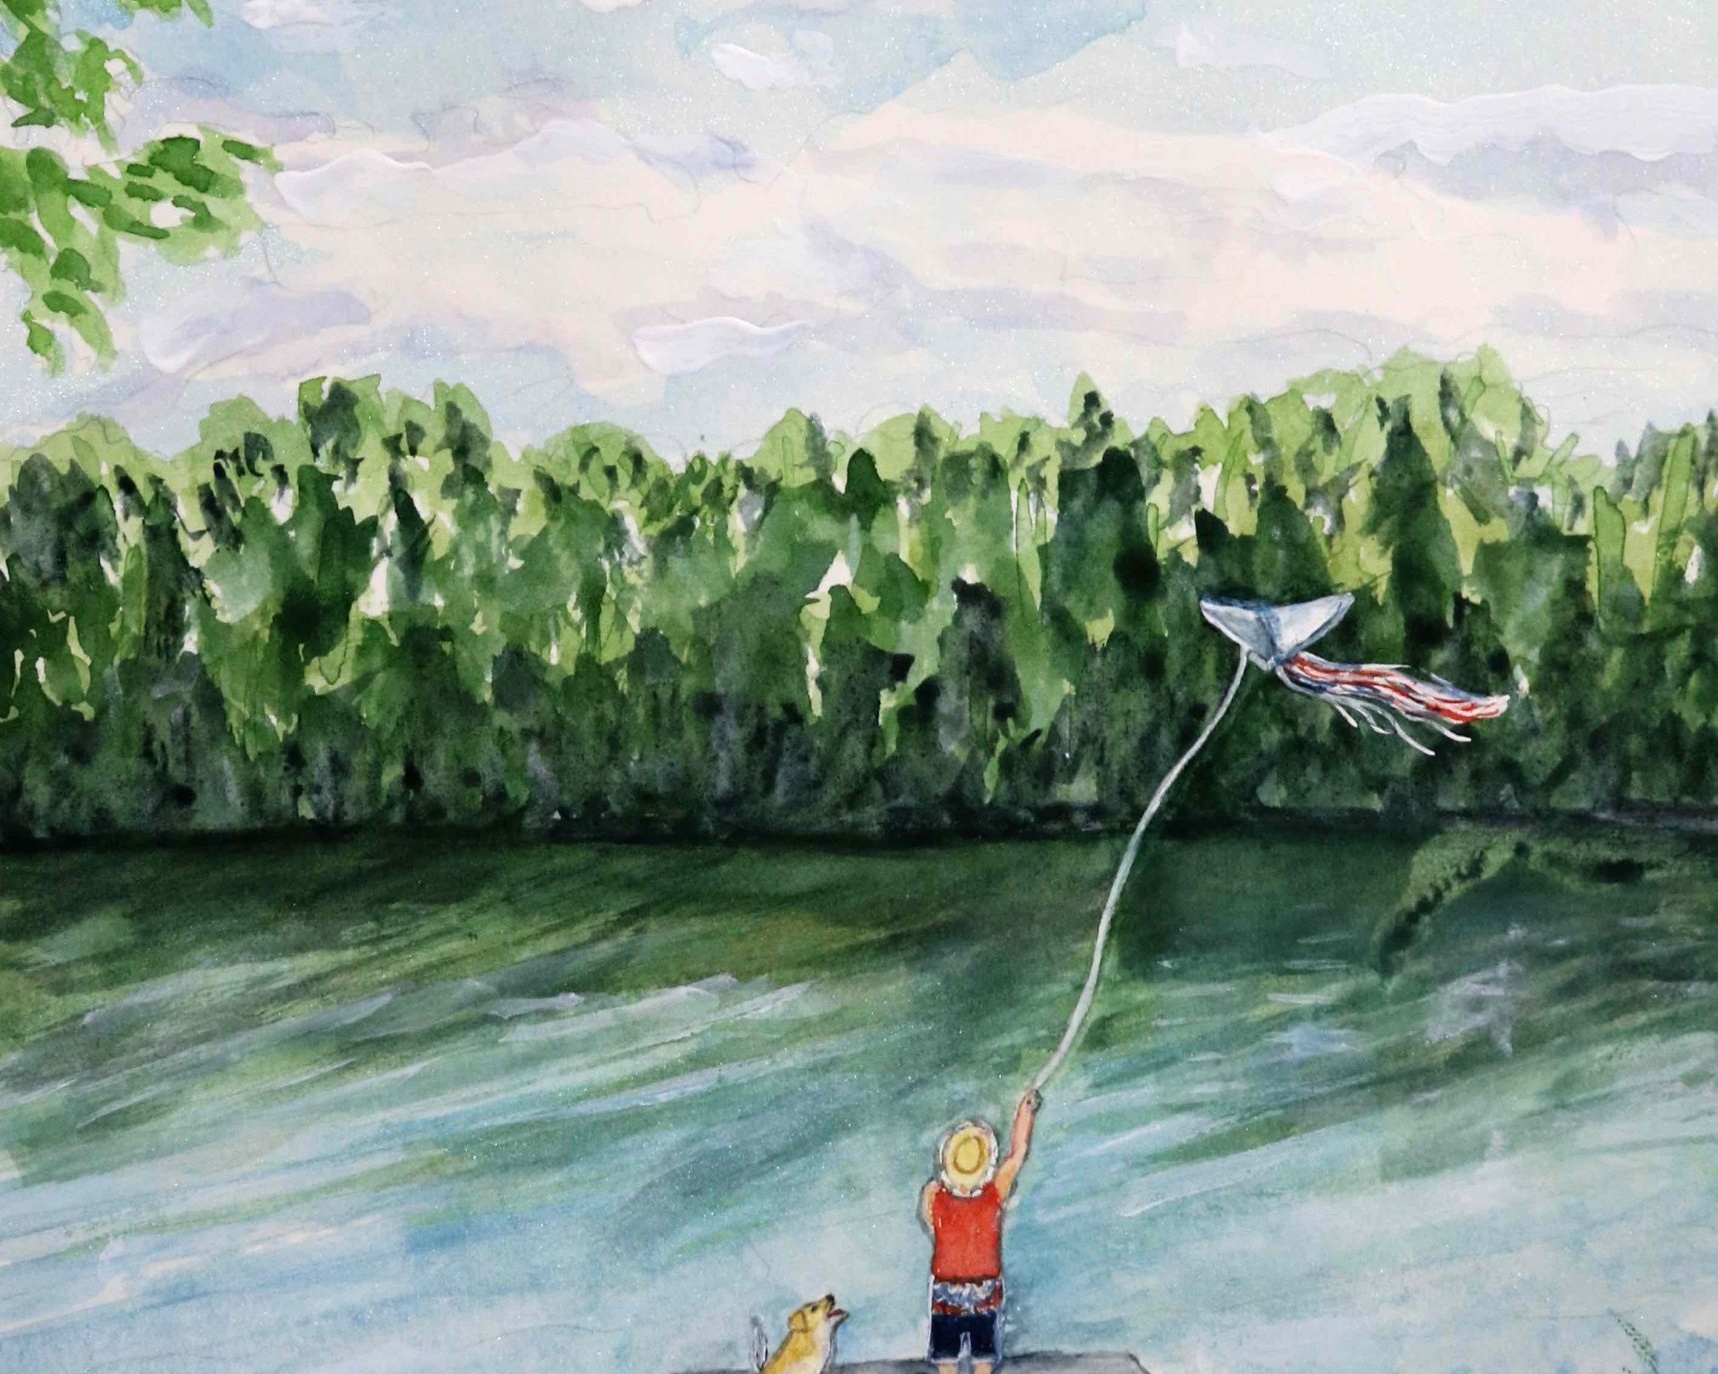 Portrait of man flying kite at lake